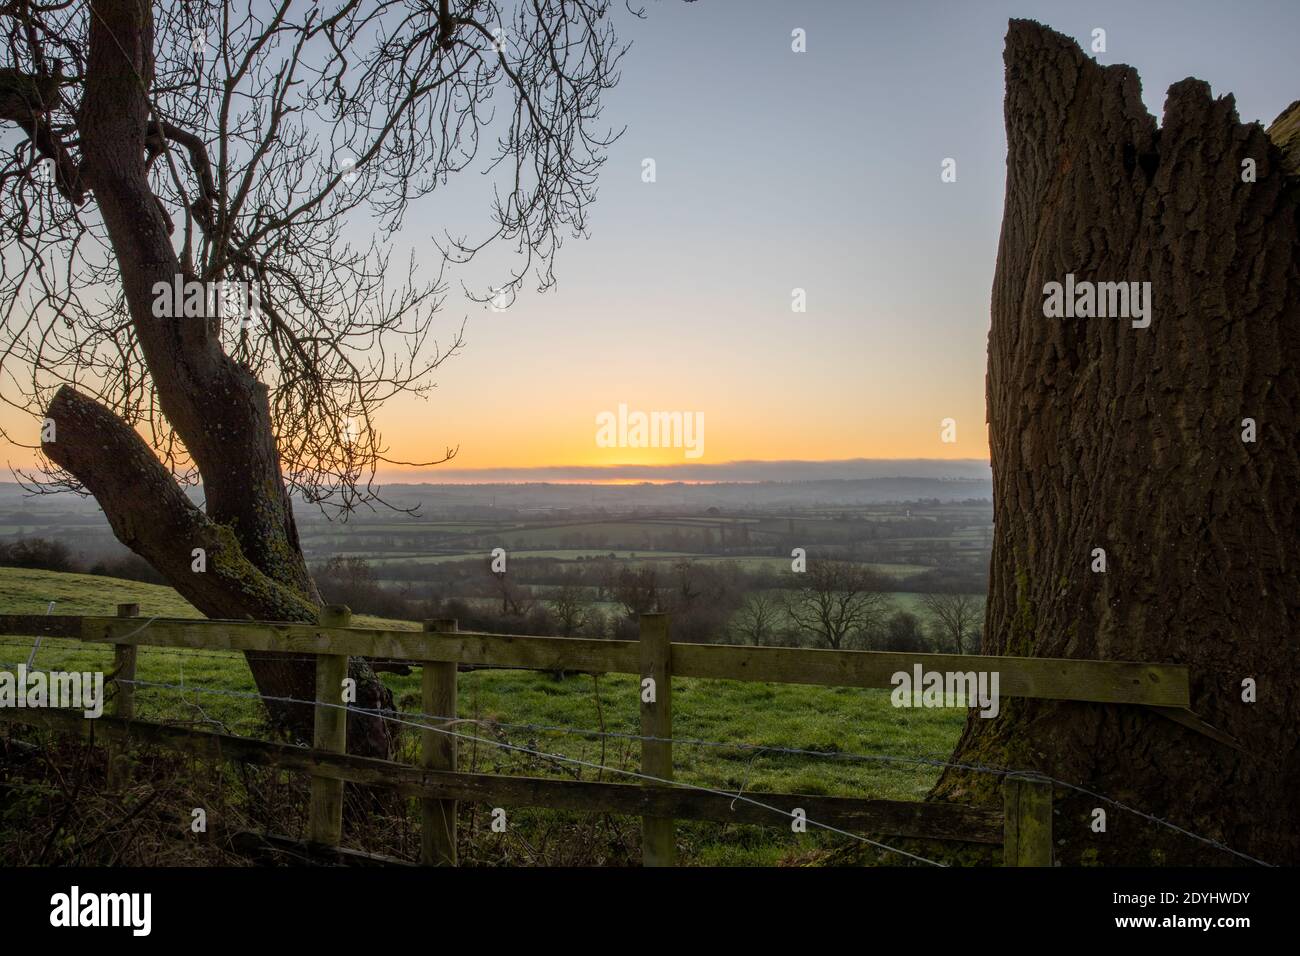 Vue au lever du soleil sur les loups du Leicestershire de Hickling Standard, Hickling, Notinghamshire, Angleterre, Royaume-Uni Banque D'Images